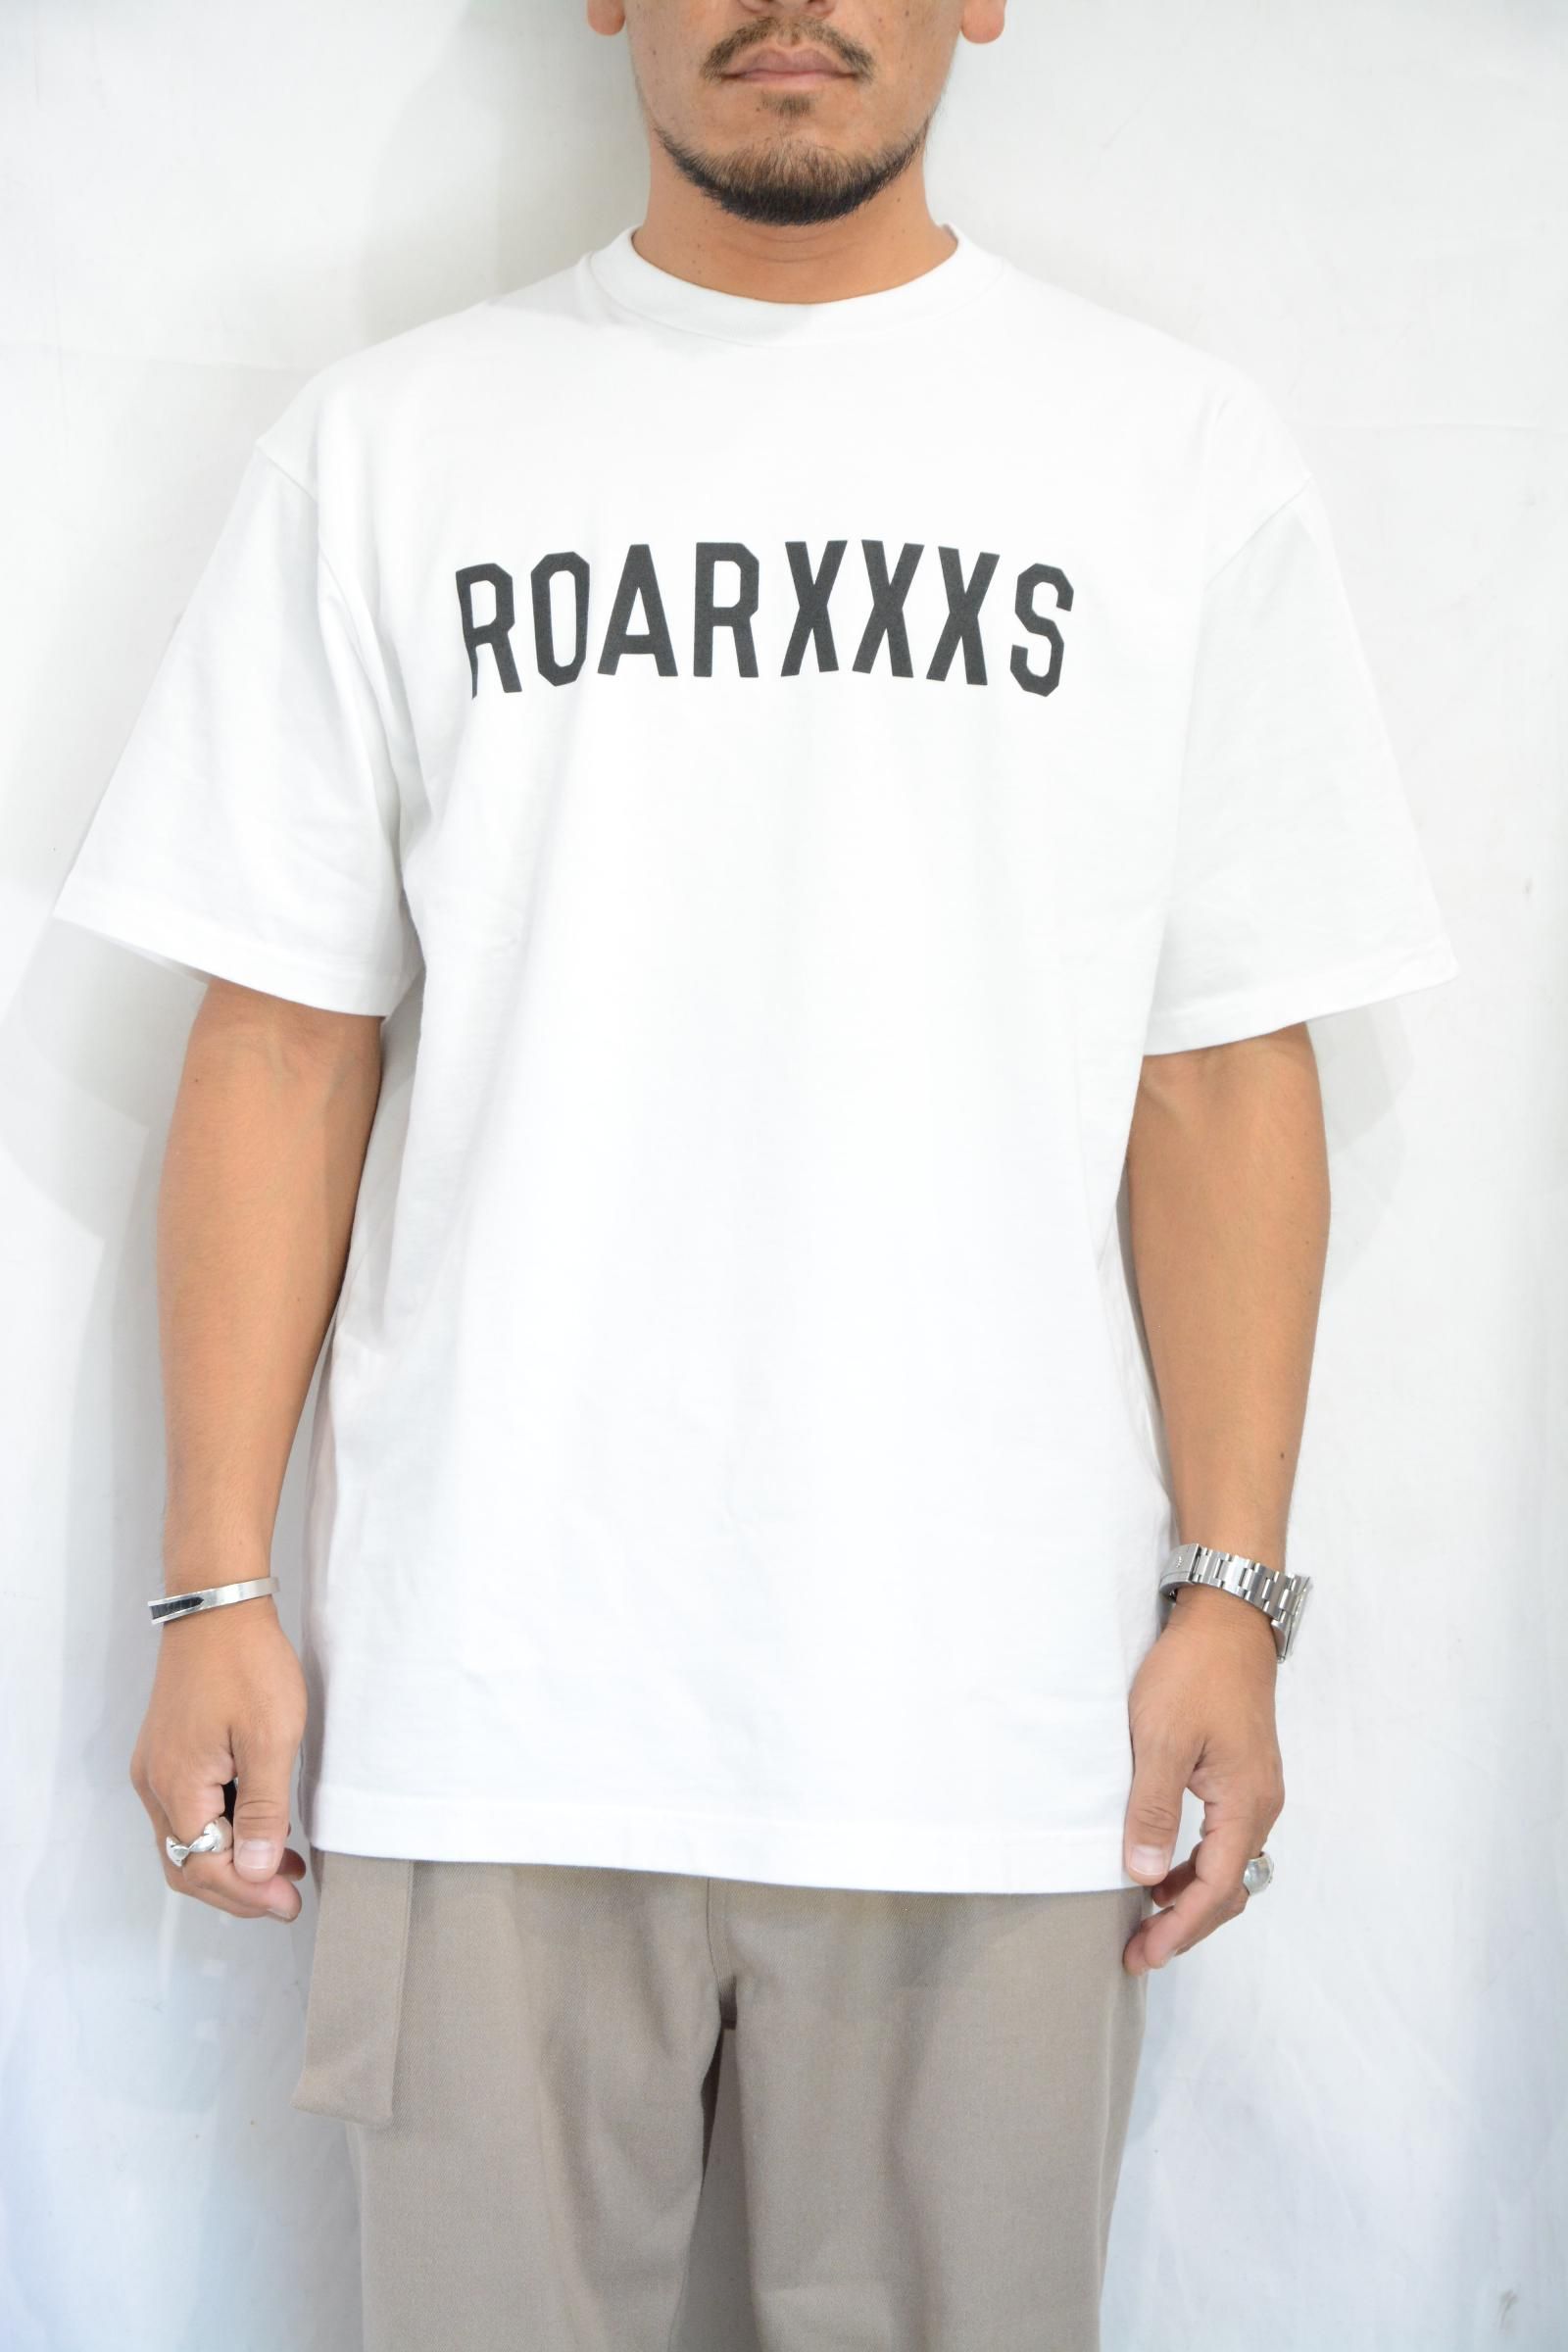 【メンズ】 roarguns - god selection xxx roar guns コラボTシャツ Sの通販 by ぺい's shop